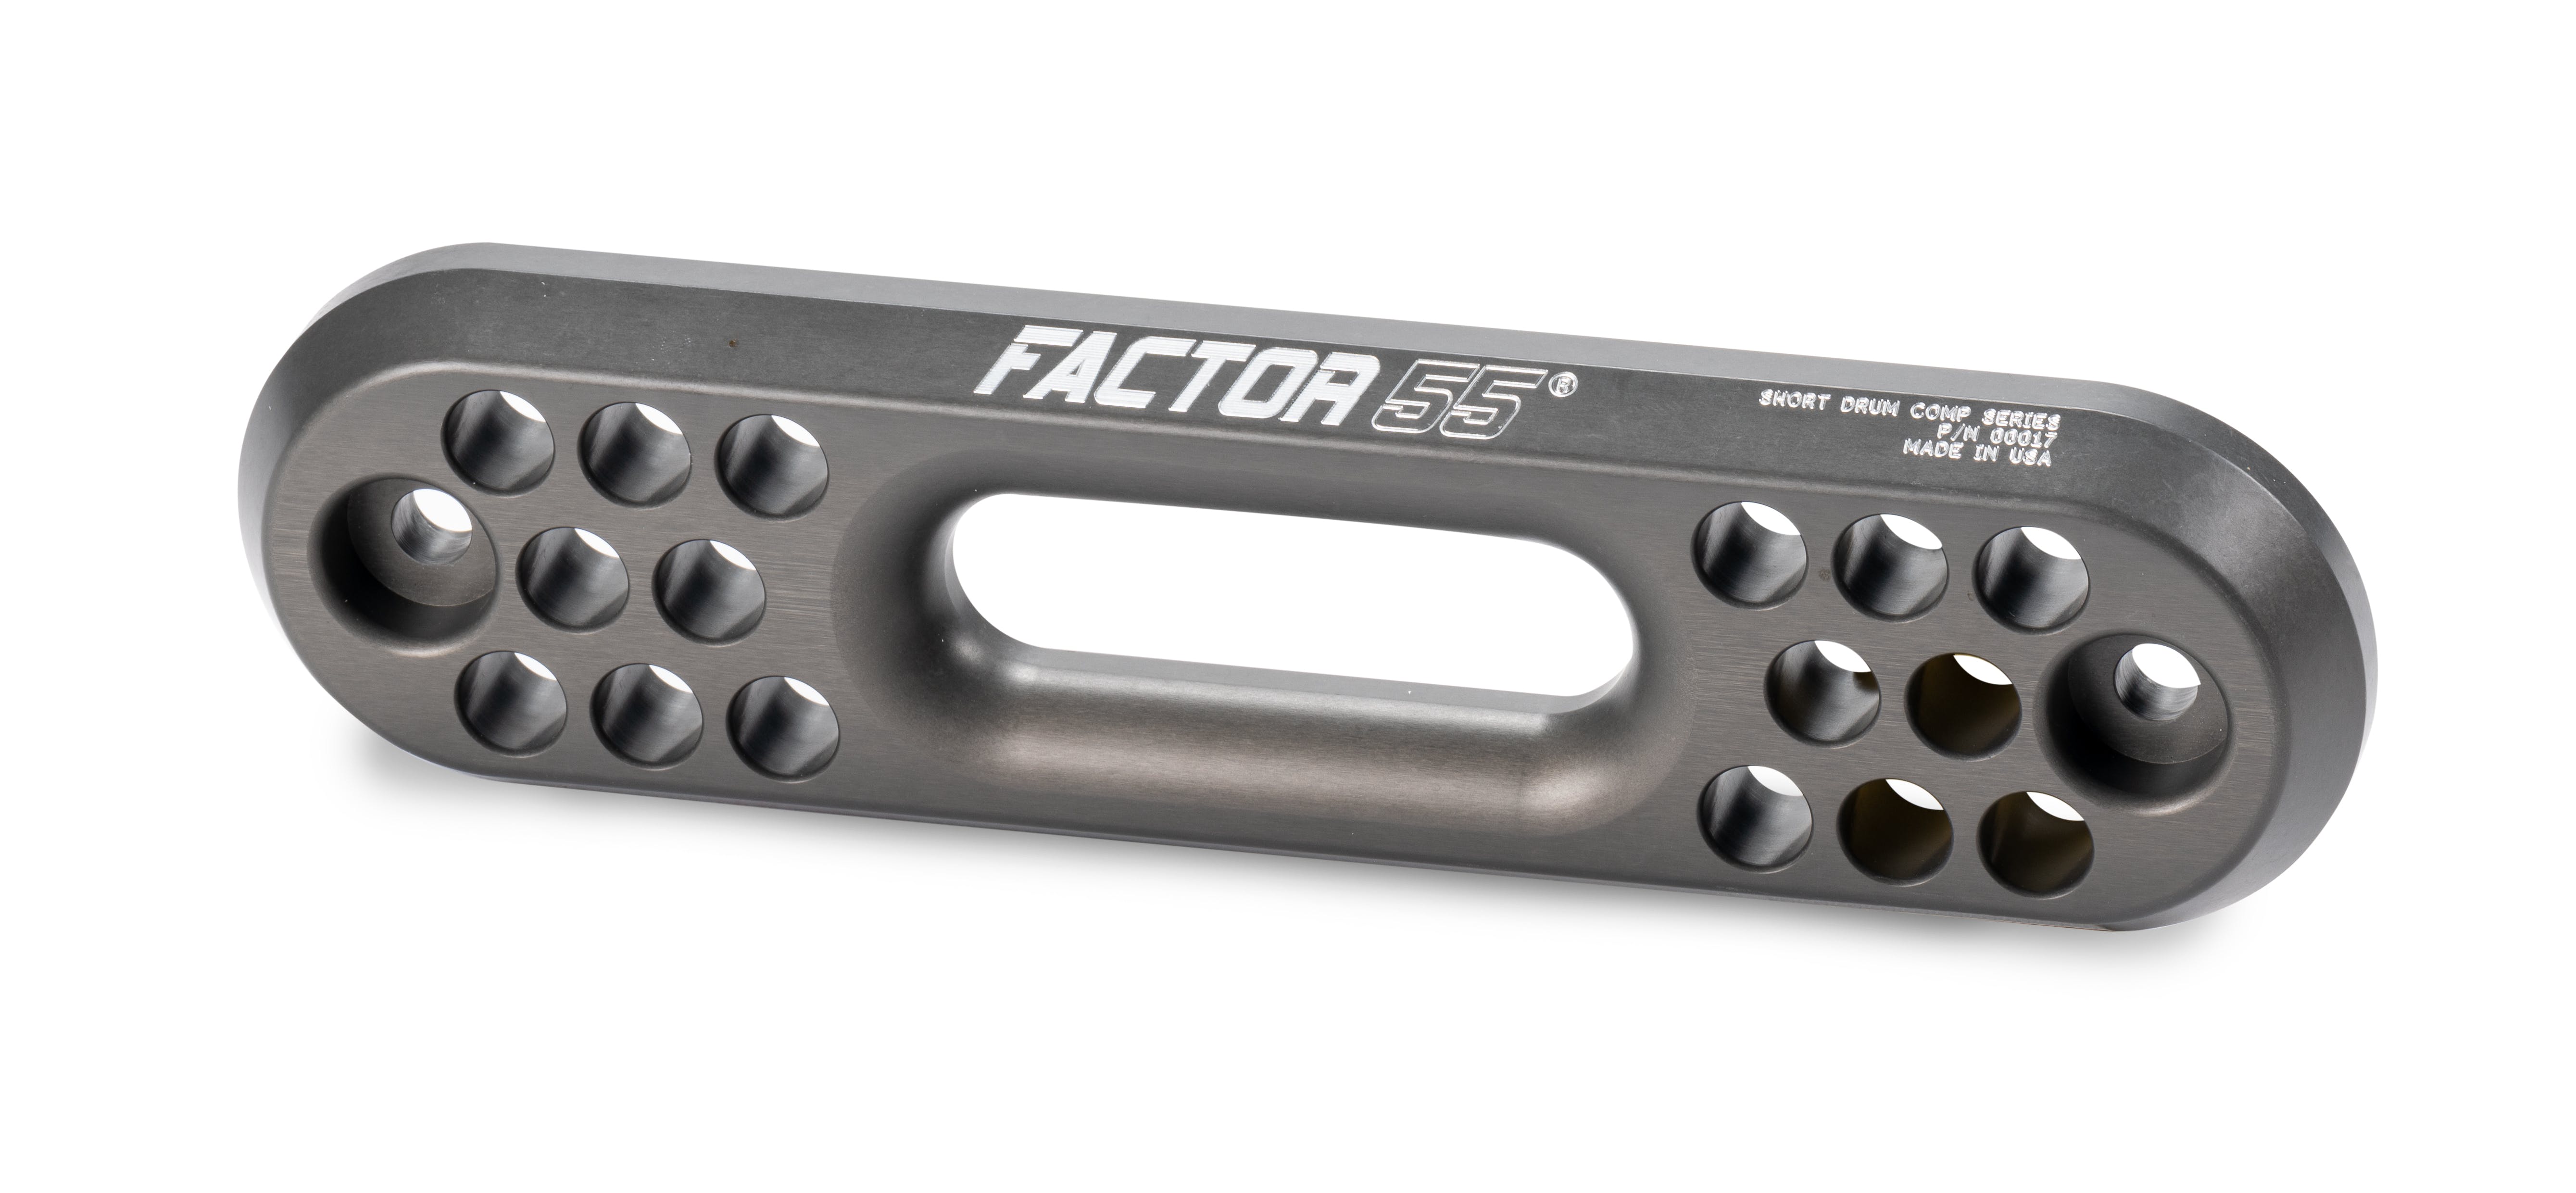 Factor 55 00017 Short Drum Comp Fairlead 1.0 (1.0 Thick)